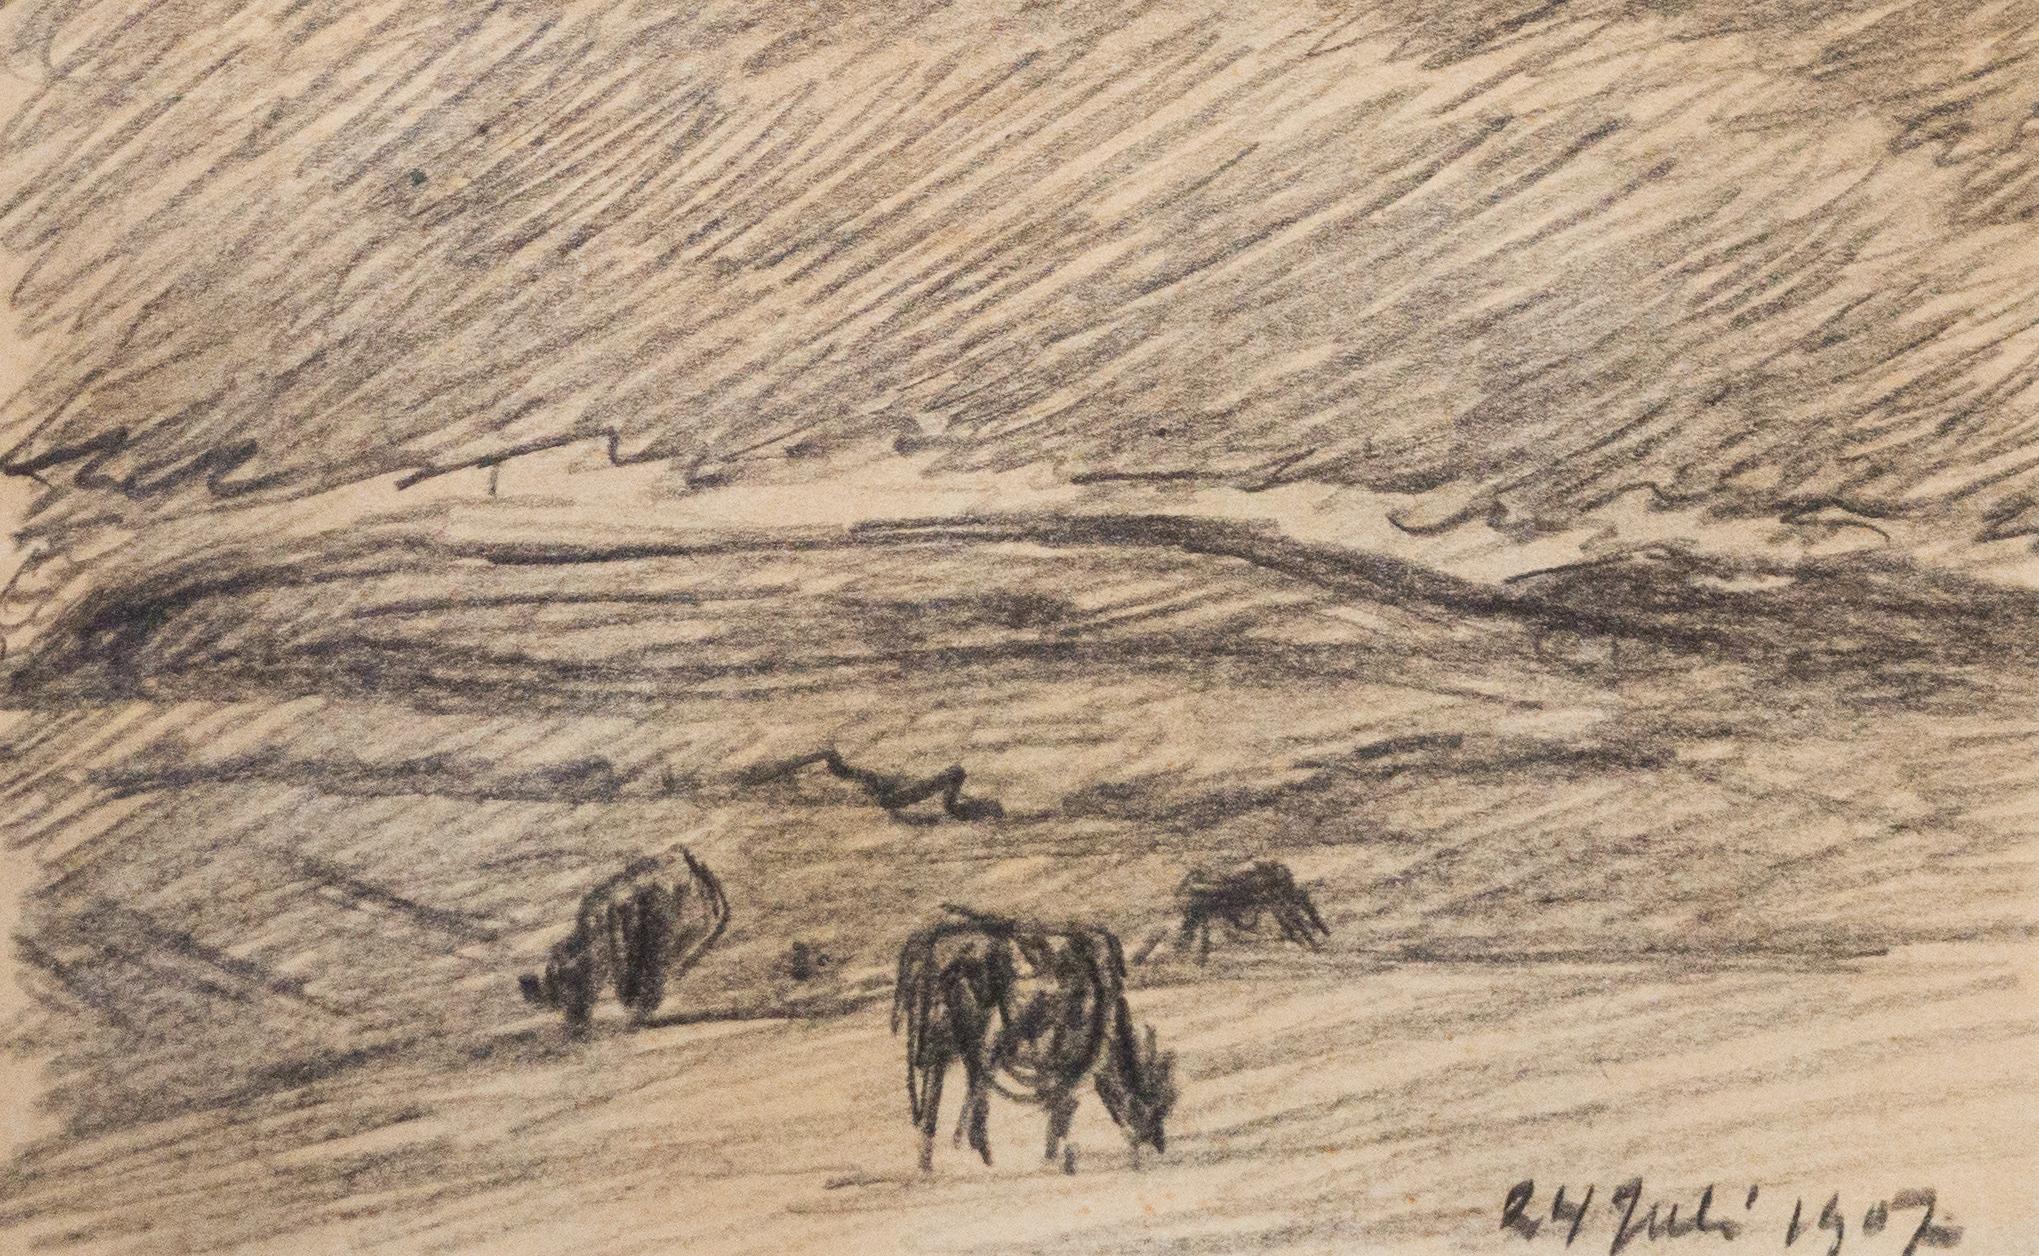 Les vaches brouillent dans une prairie, crayon, 1907 - Naturalisme Art par Nils Kreuger